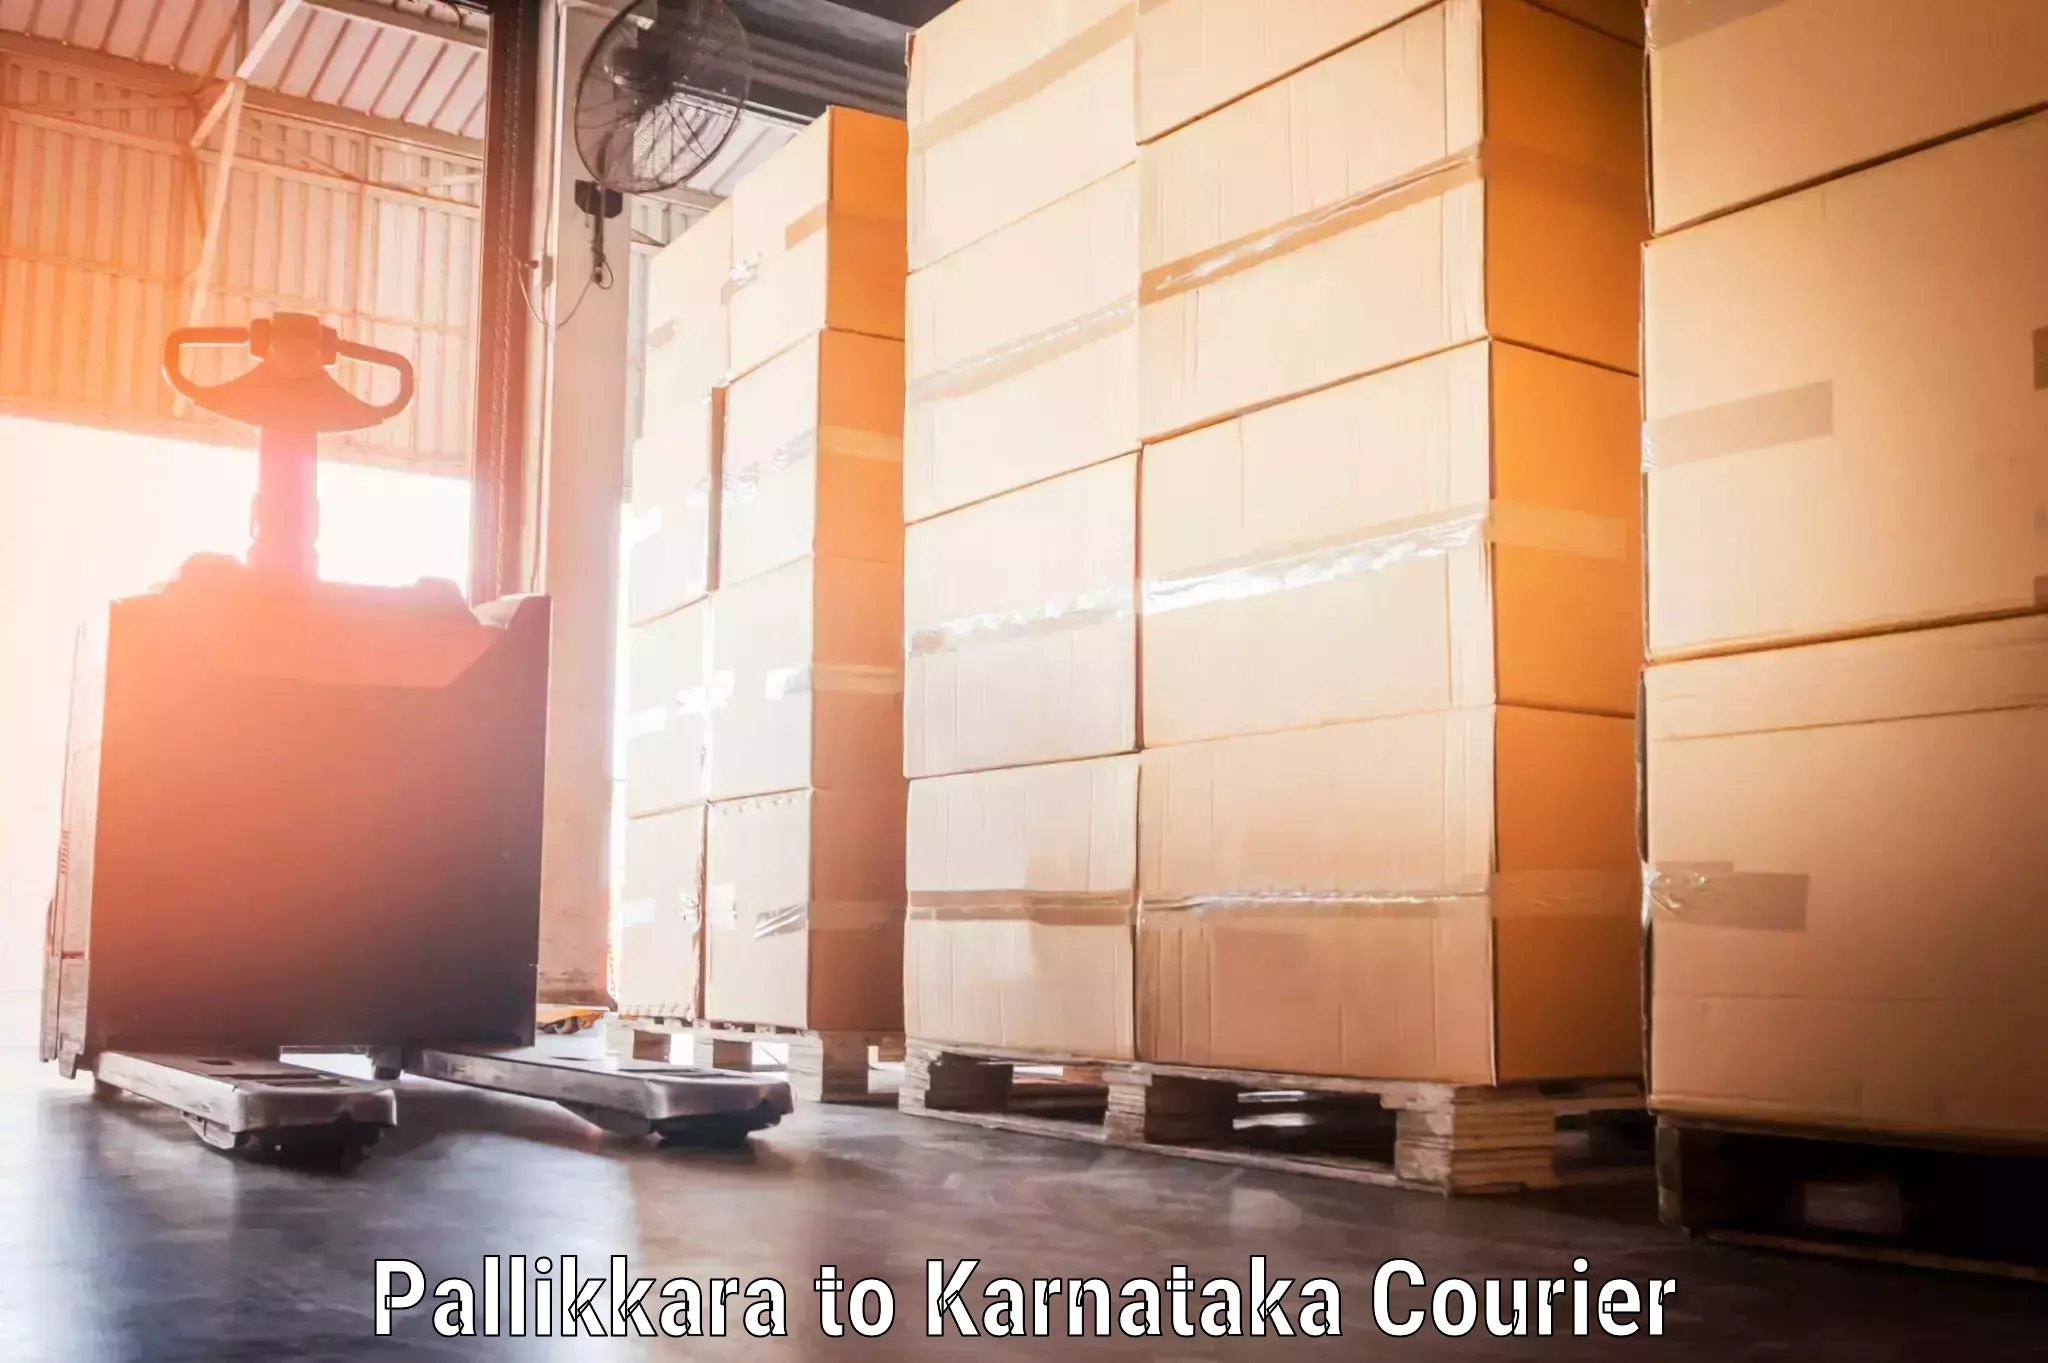 Baggage shipping experience in Pallikkara to Bangarapet